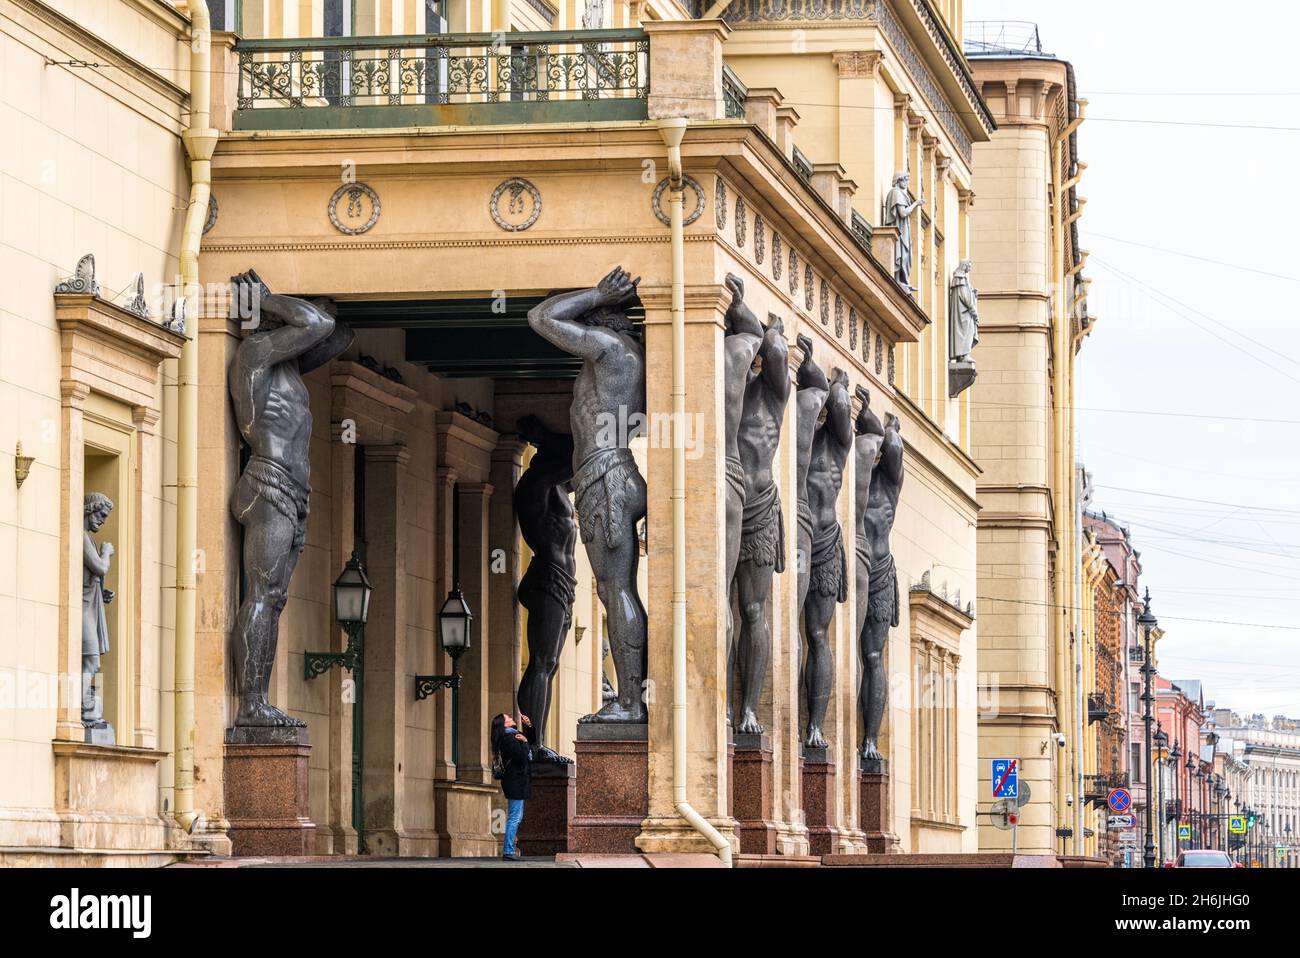 Atlantes, giganti di granito dello scultore Alexander Terebenev che sostiene il portico del nuovo Eremo, San Pietroburgo, Russia, Europa Foto Stock